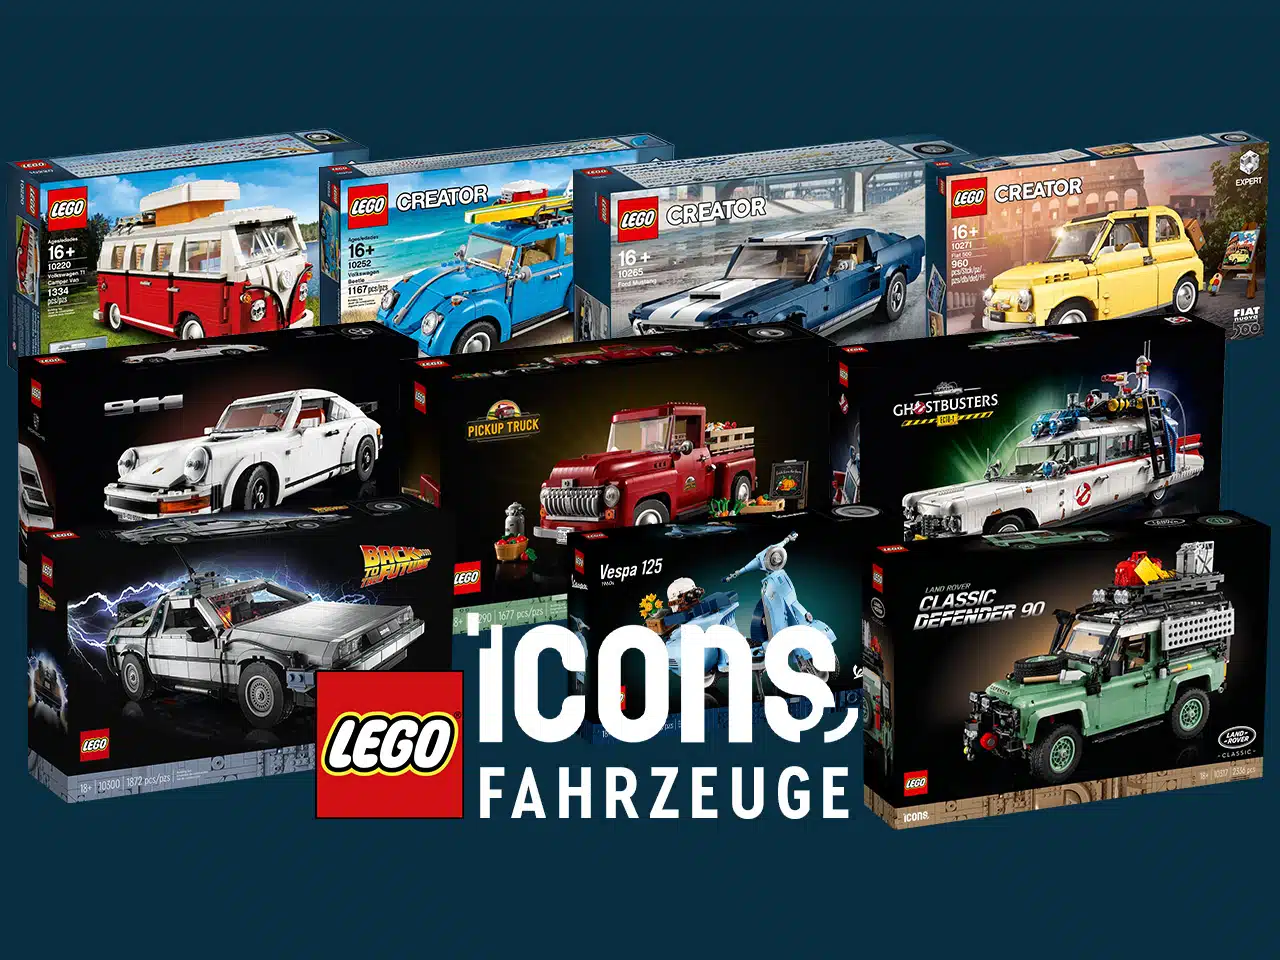 LEGO Creator Expert 10271 Fiat 500: Alle Infos, Bilder und Designer-Video